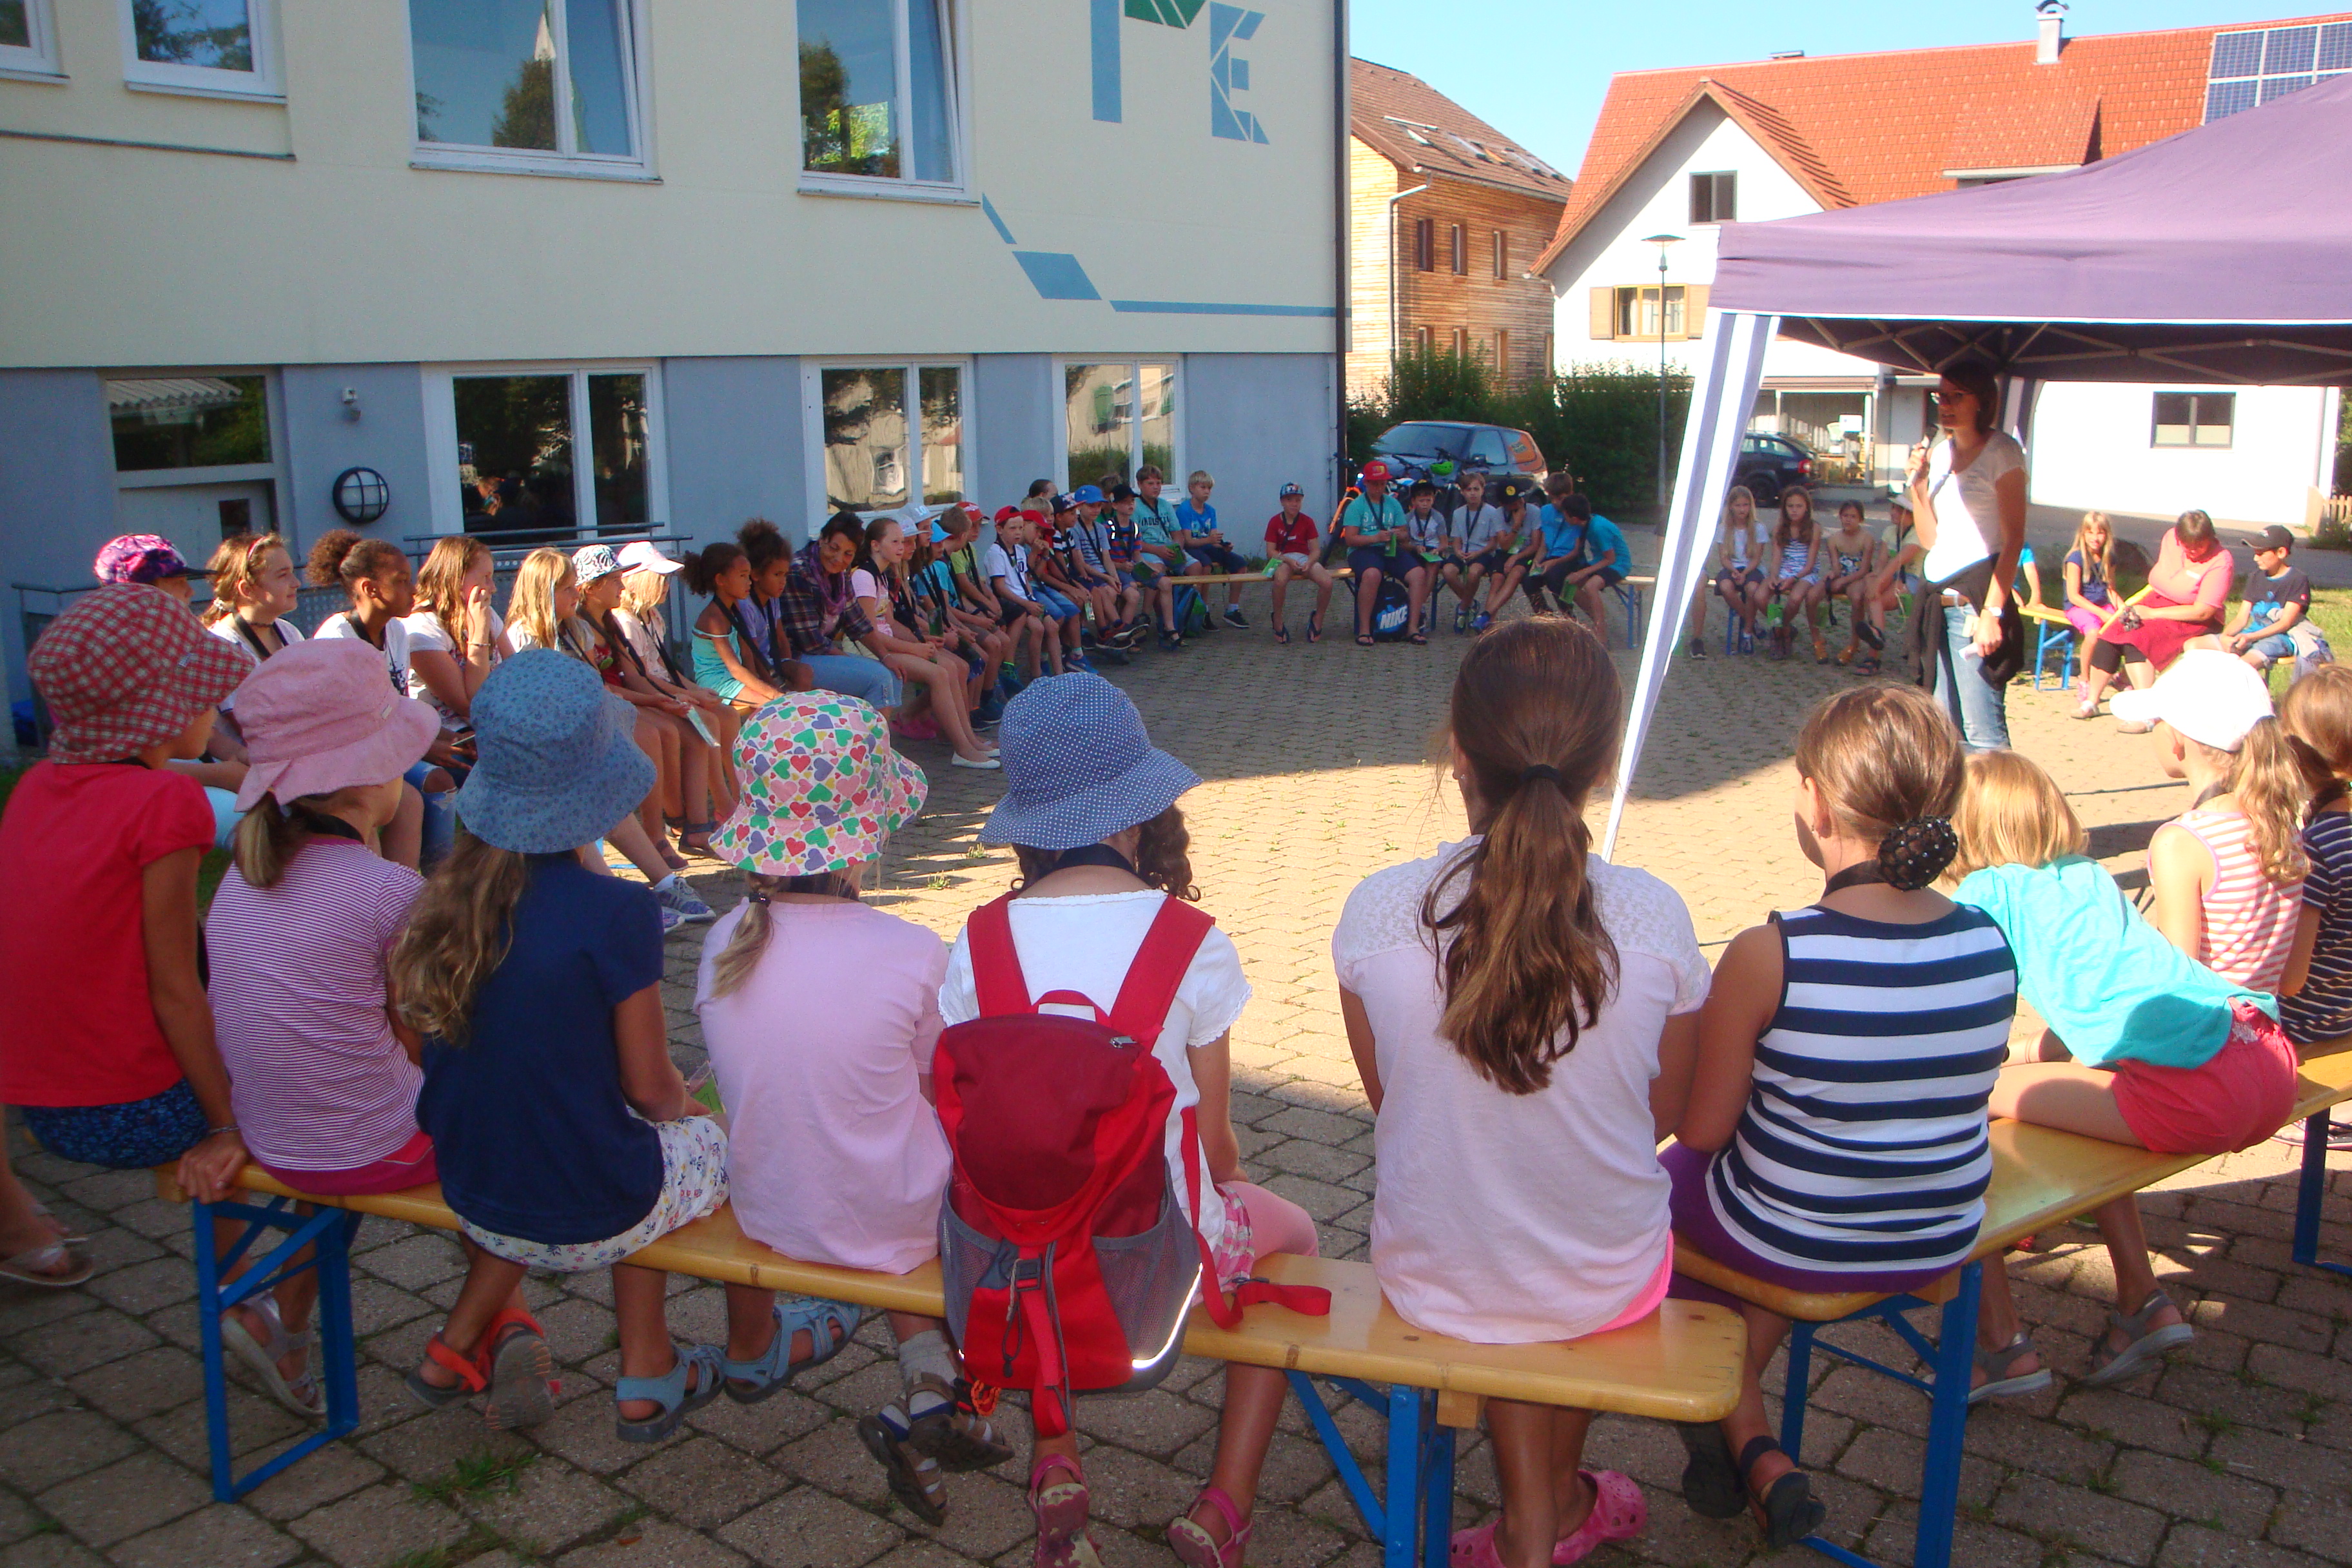  Kinder sitzen auf Bänken in einem großen Kreis, in der Mitte ist ein Pavillon aufgebaut - das Bild wird mit Klick vergrößert 